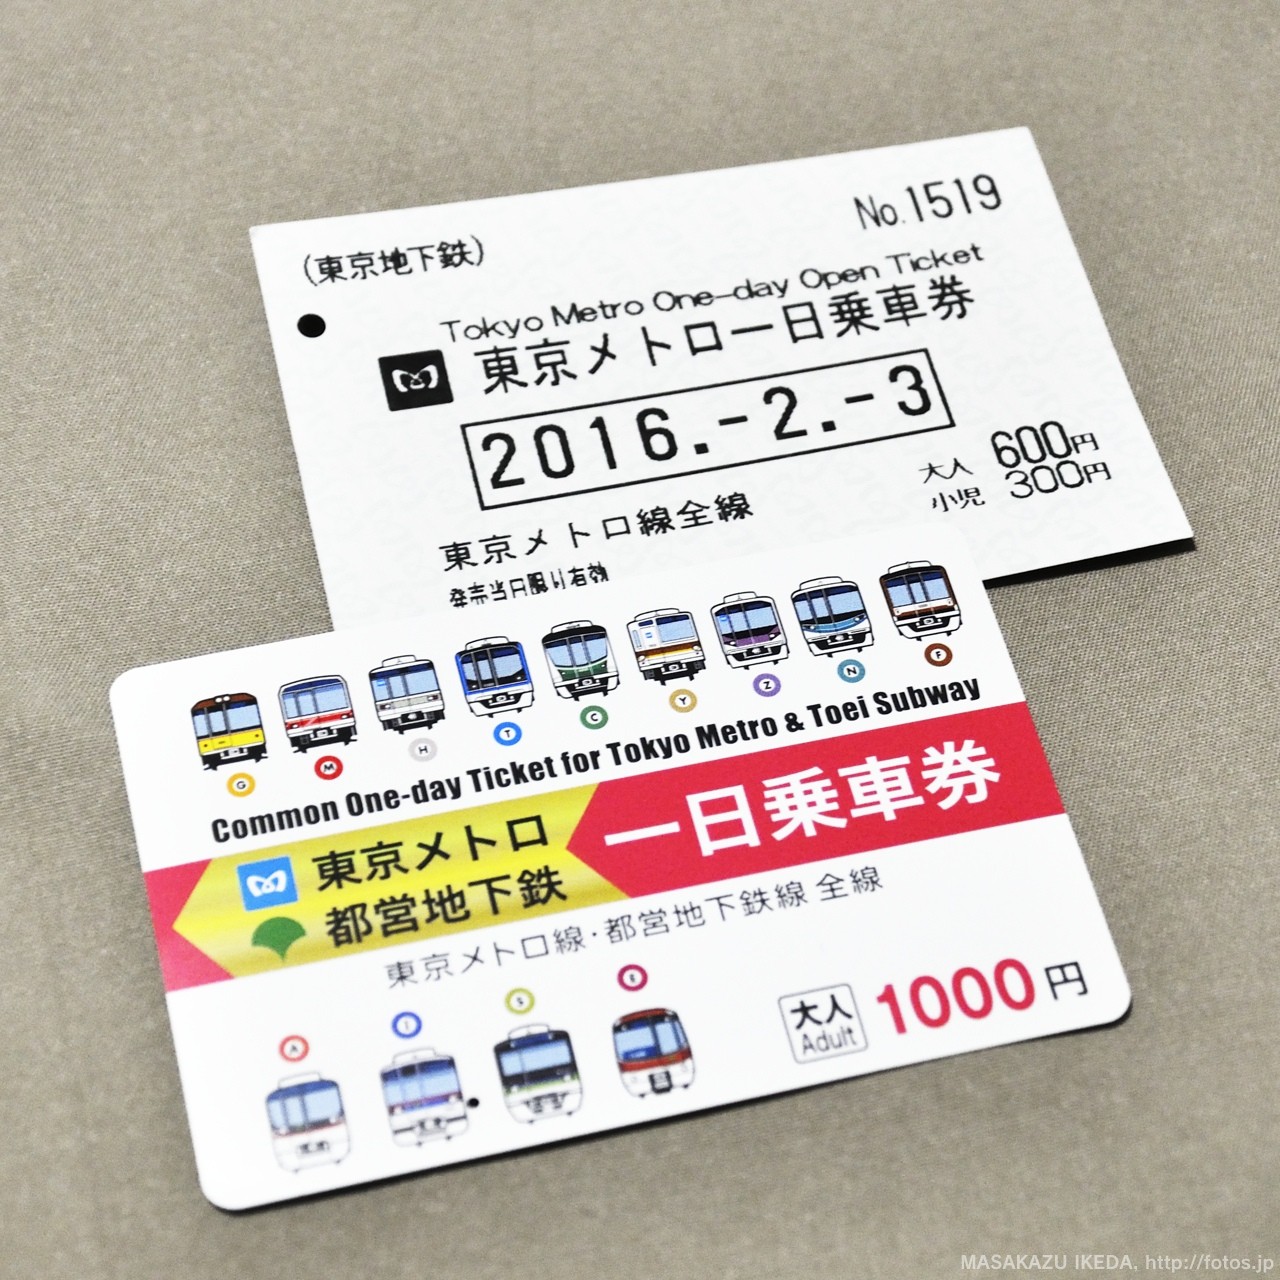 東京メトロの大変おトクな1日乗車券を利用する！ | fotos.jp